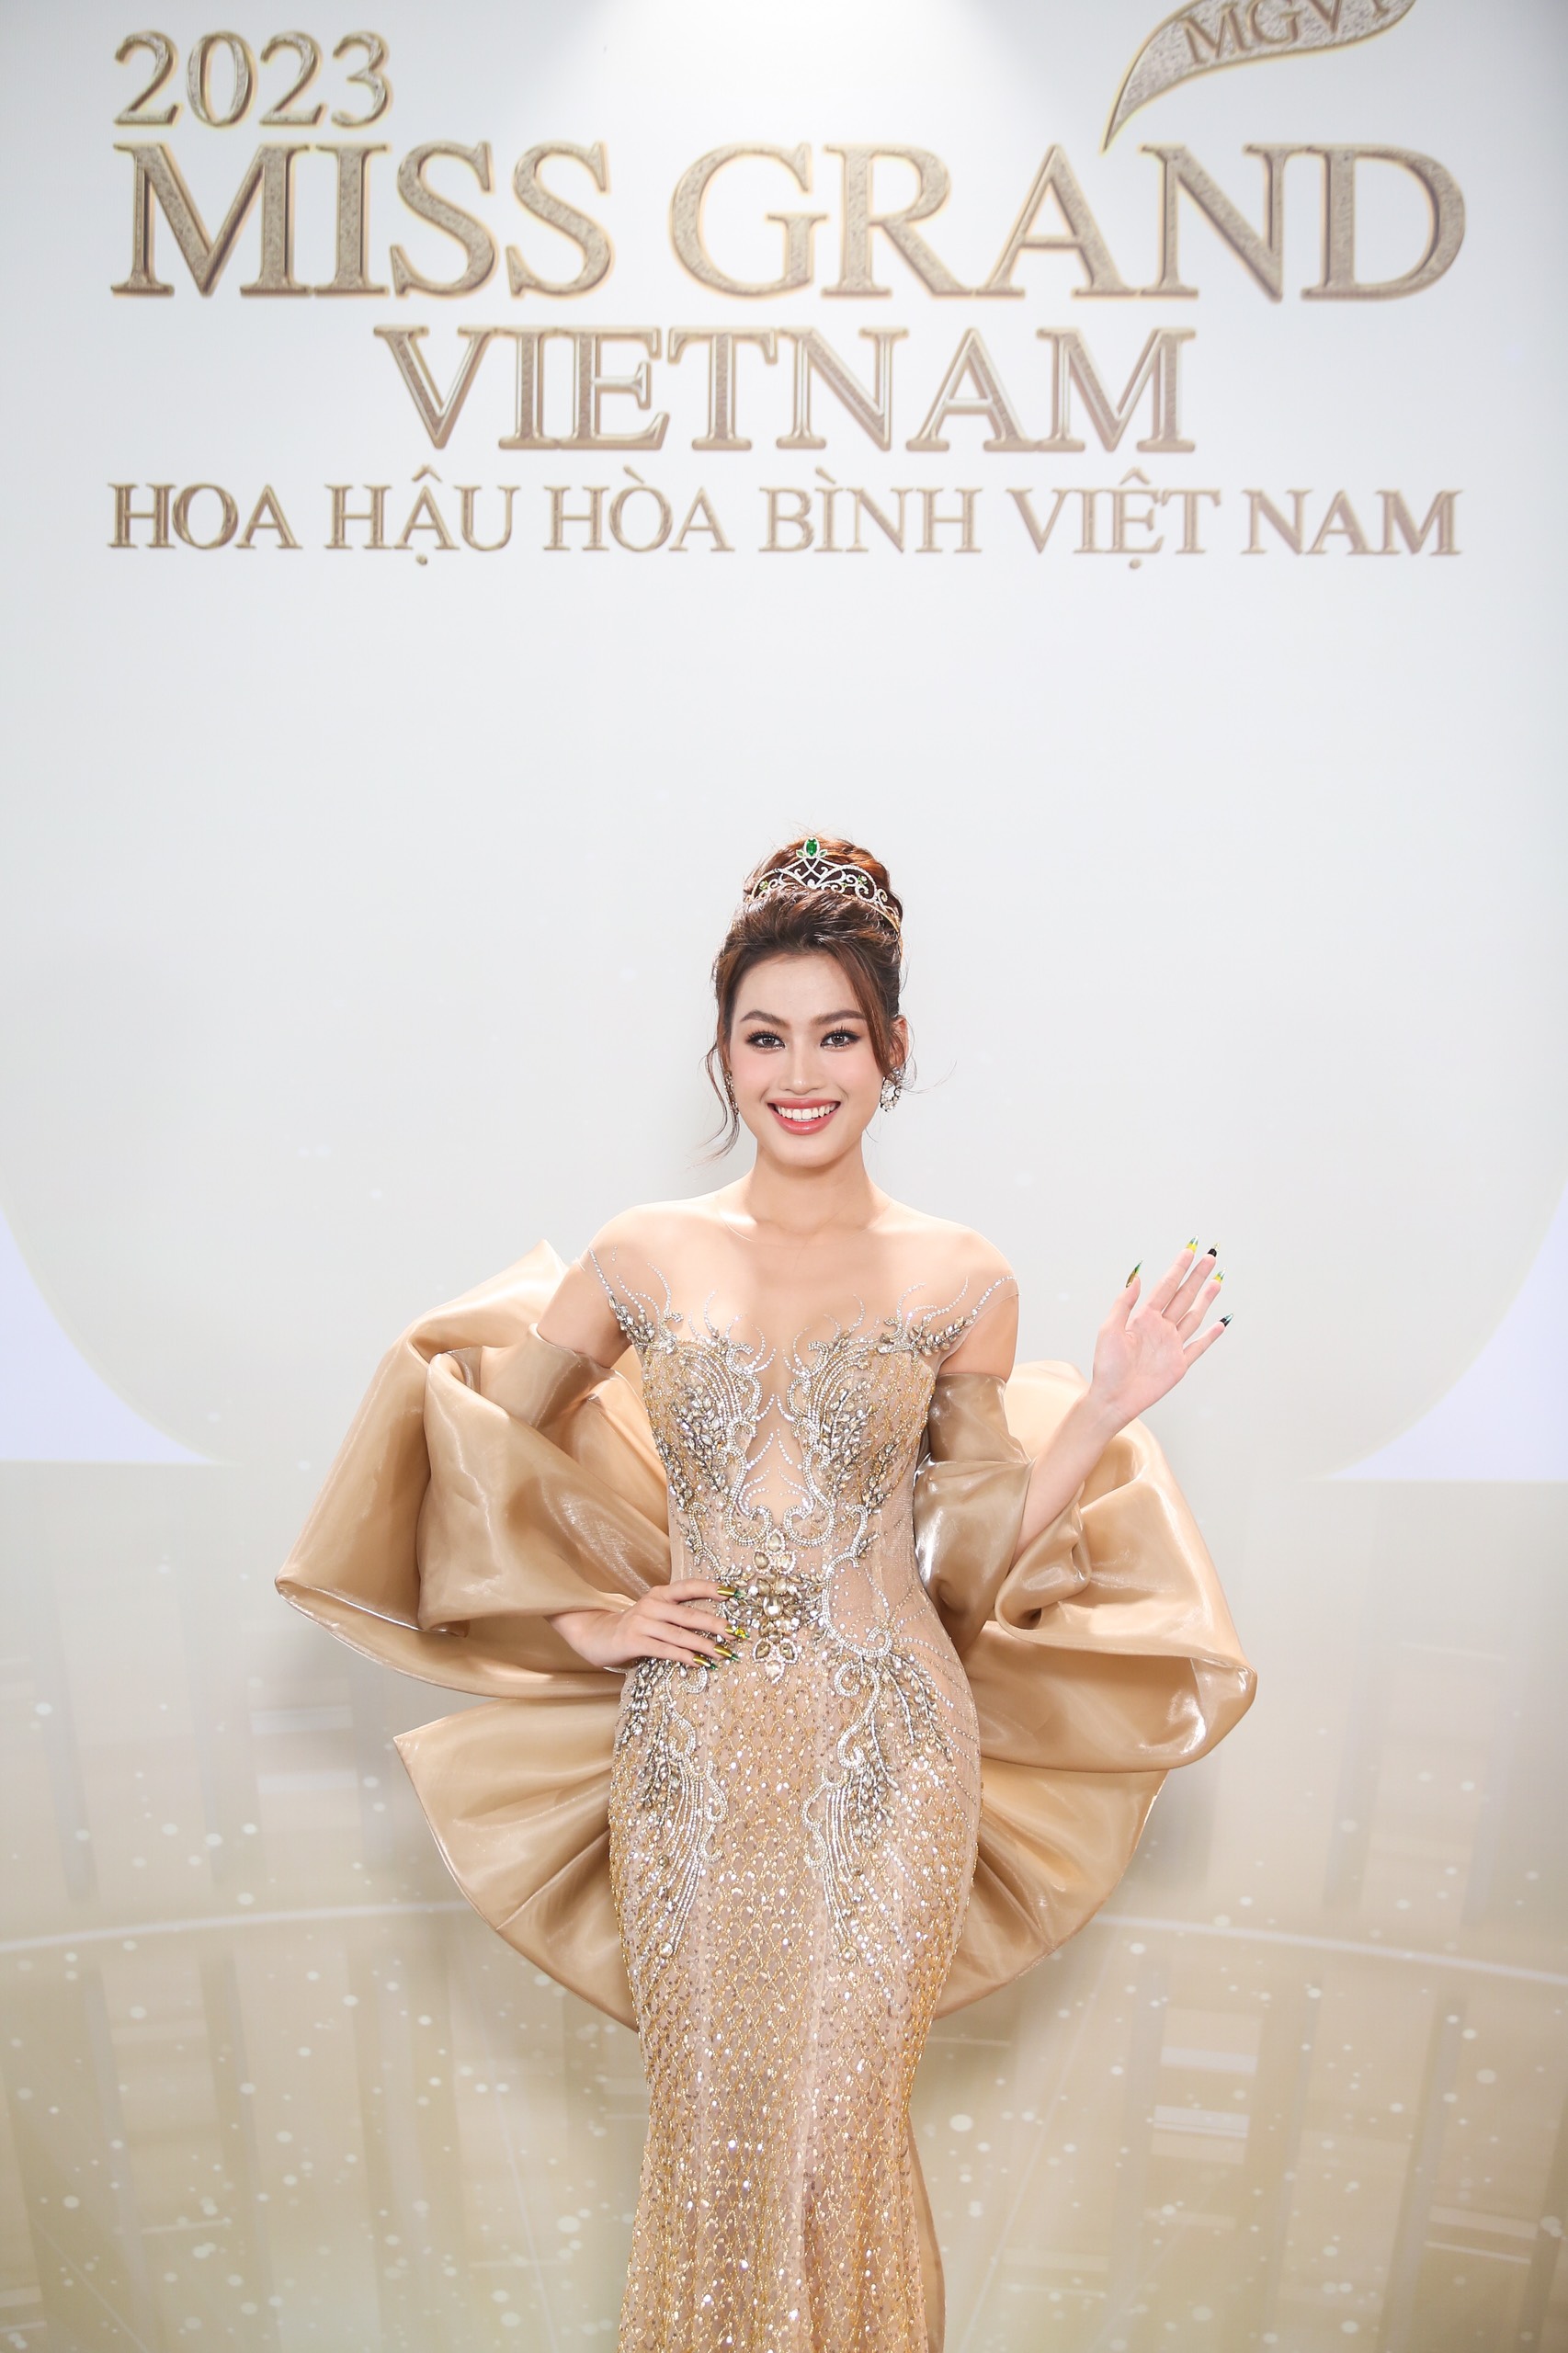 Phát La thoải mái chụp ảnh cùng Hoa hậu Thiên Ân giữa tin đồn tình cảm - Ảnh 6.